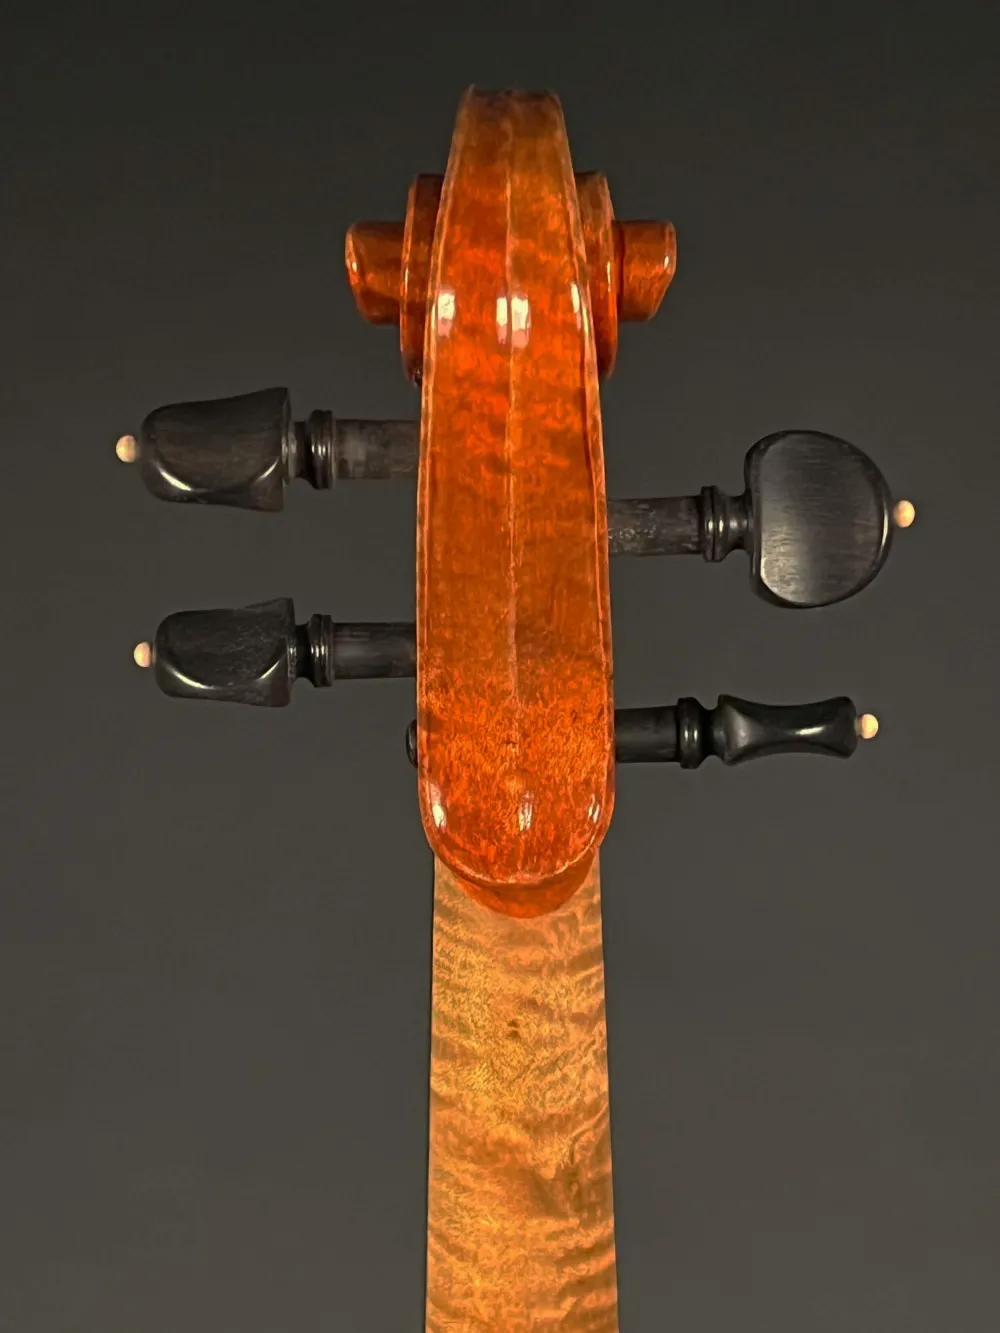 Schnecke-hinten-Detailansicht einer Simon Joseph Meister Geige (Violine) Guarneri Modell Handarbeit 2020